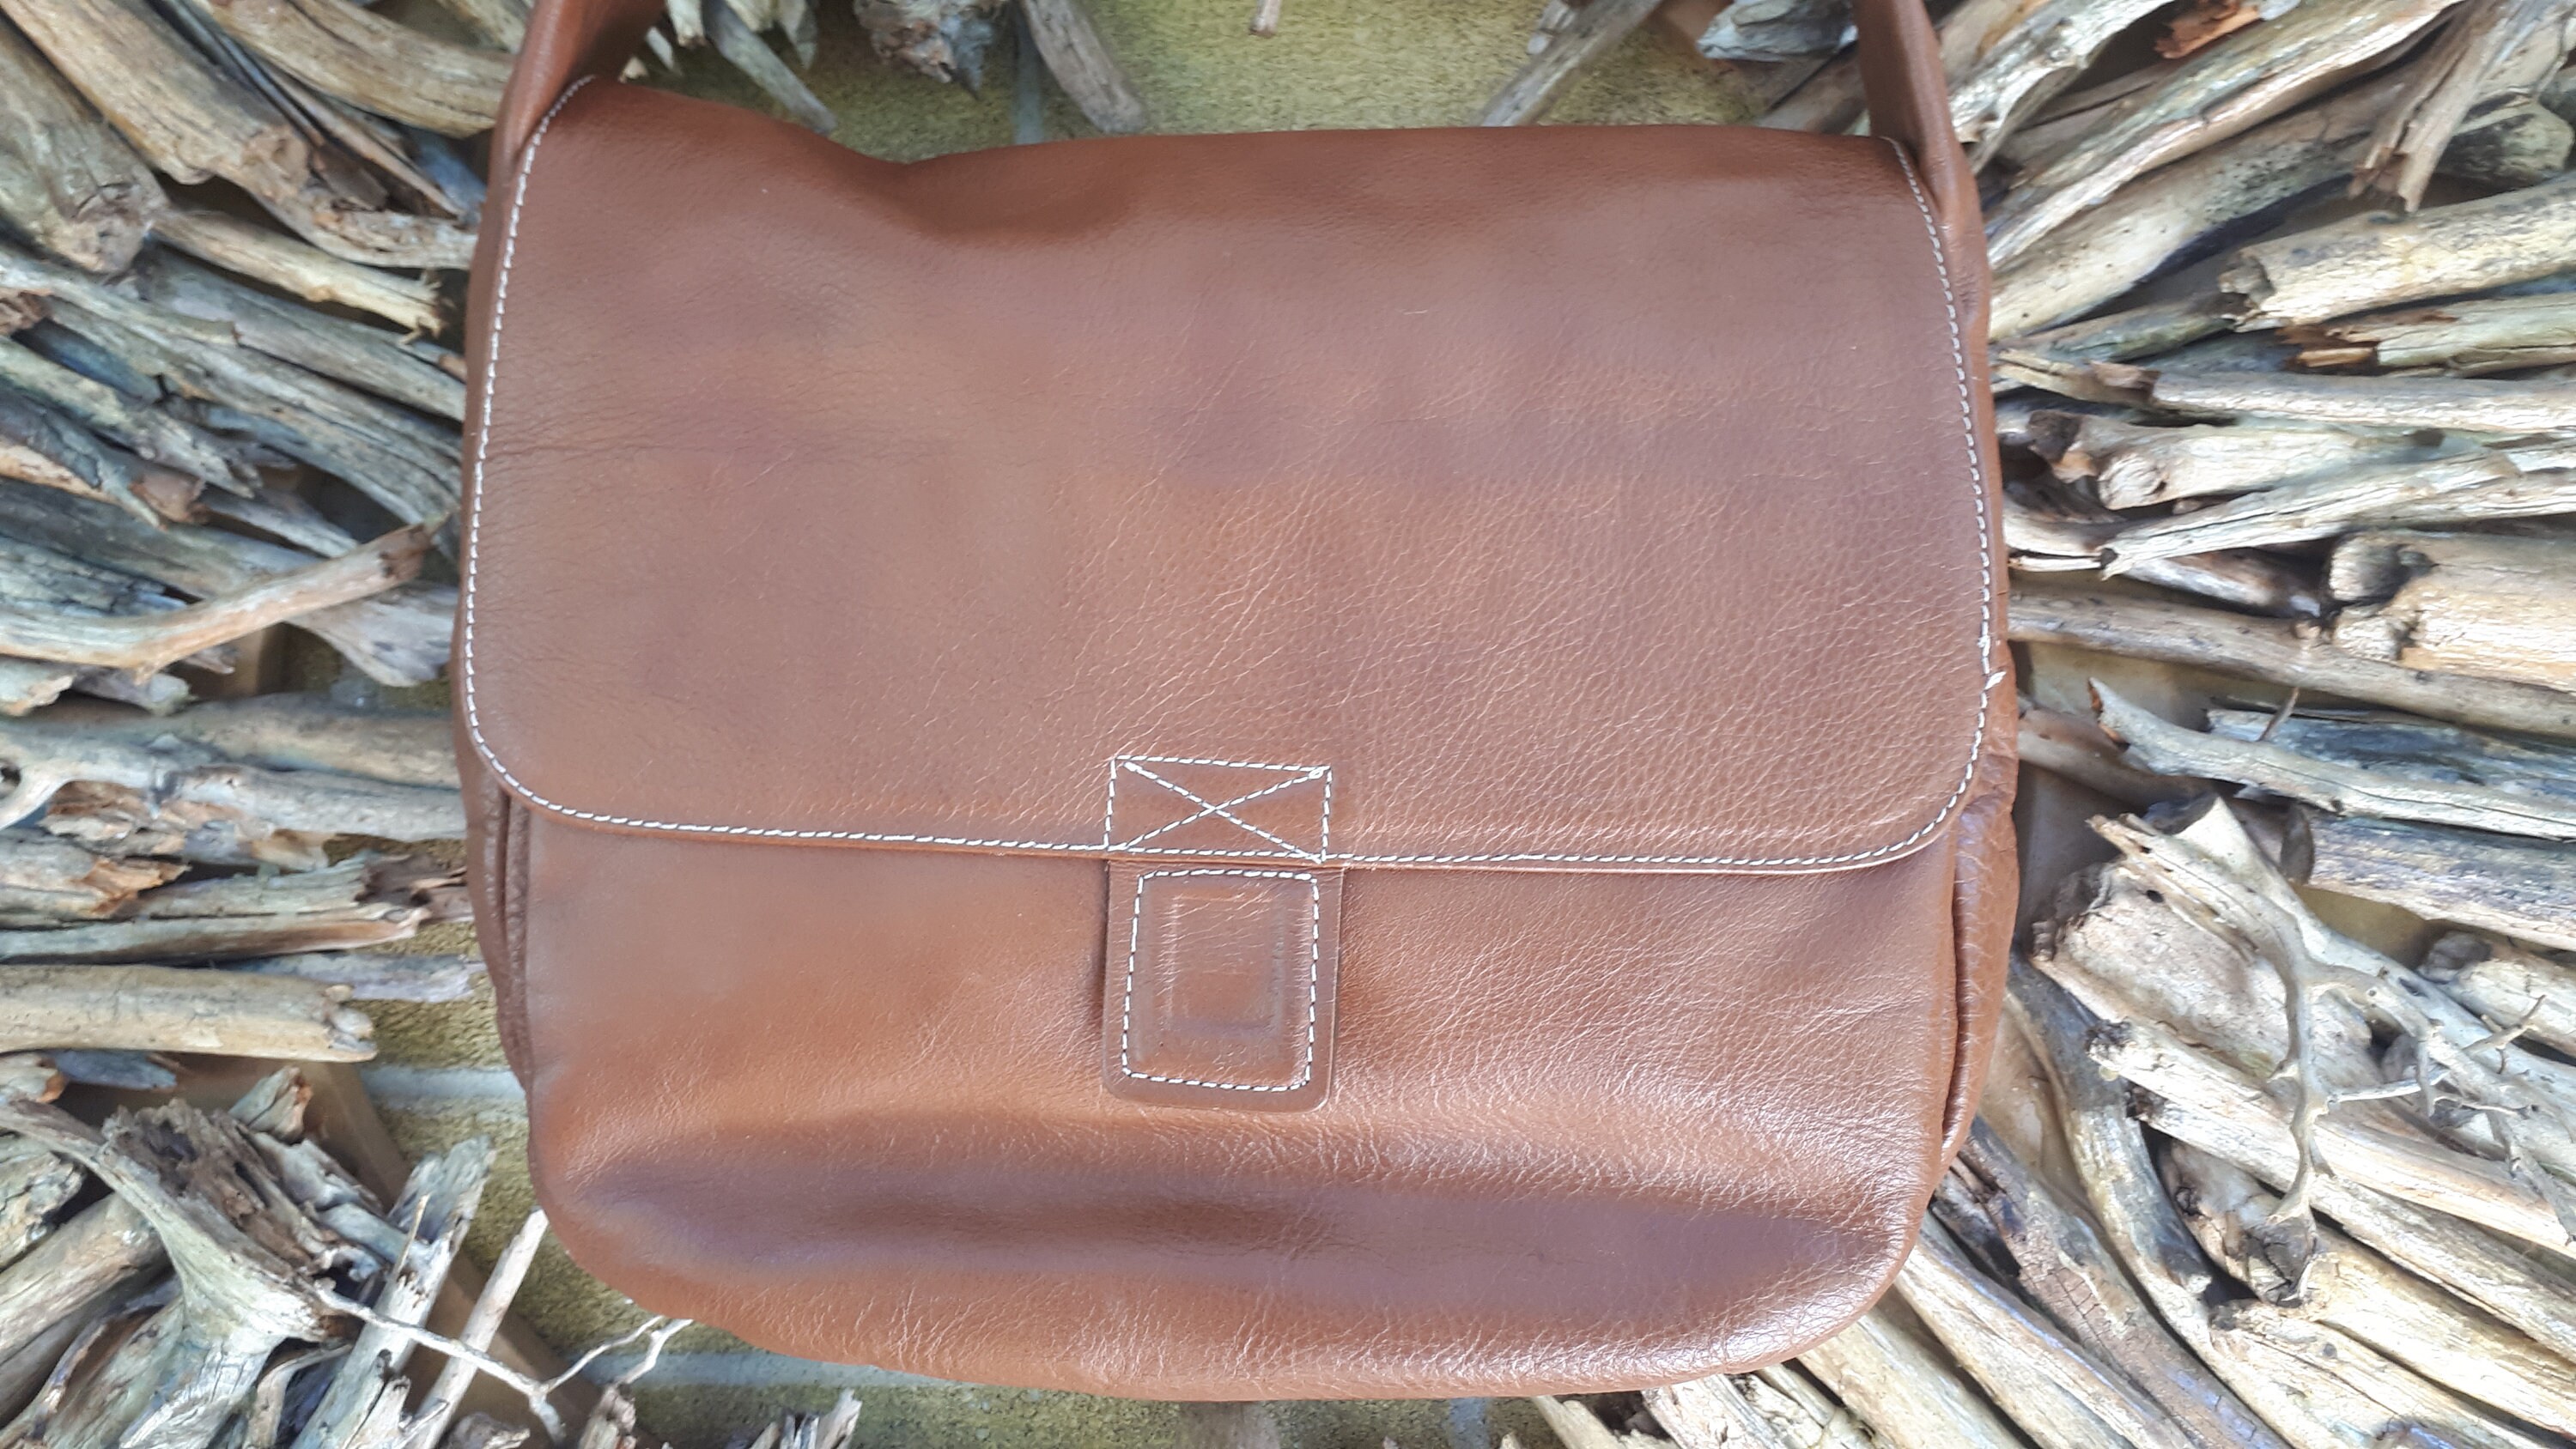 Vera Pelle Avorio RED Crossbody Bag Elephant Genuine Leather ITALY